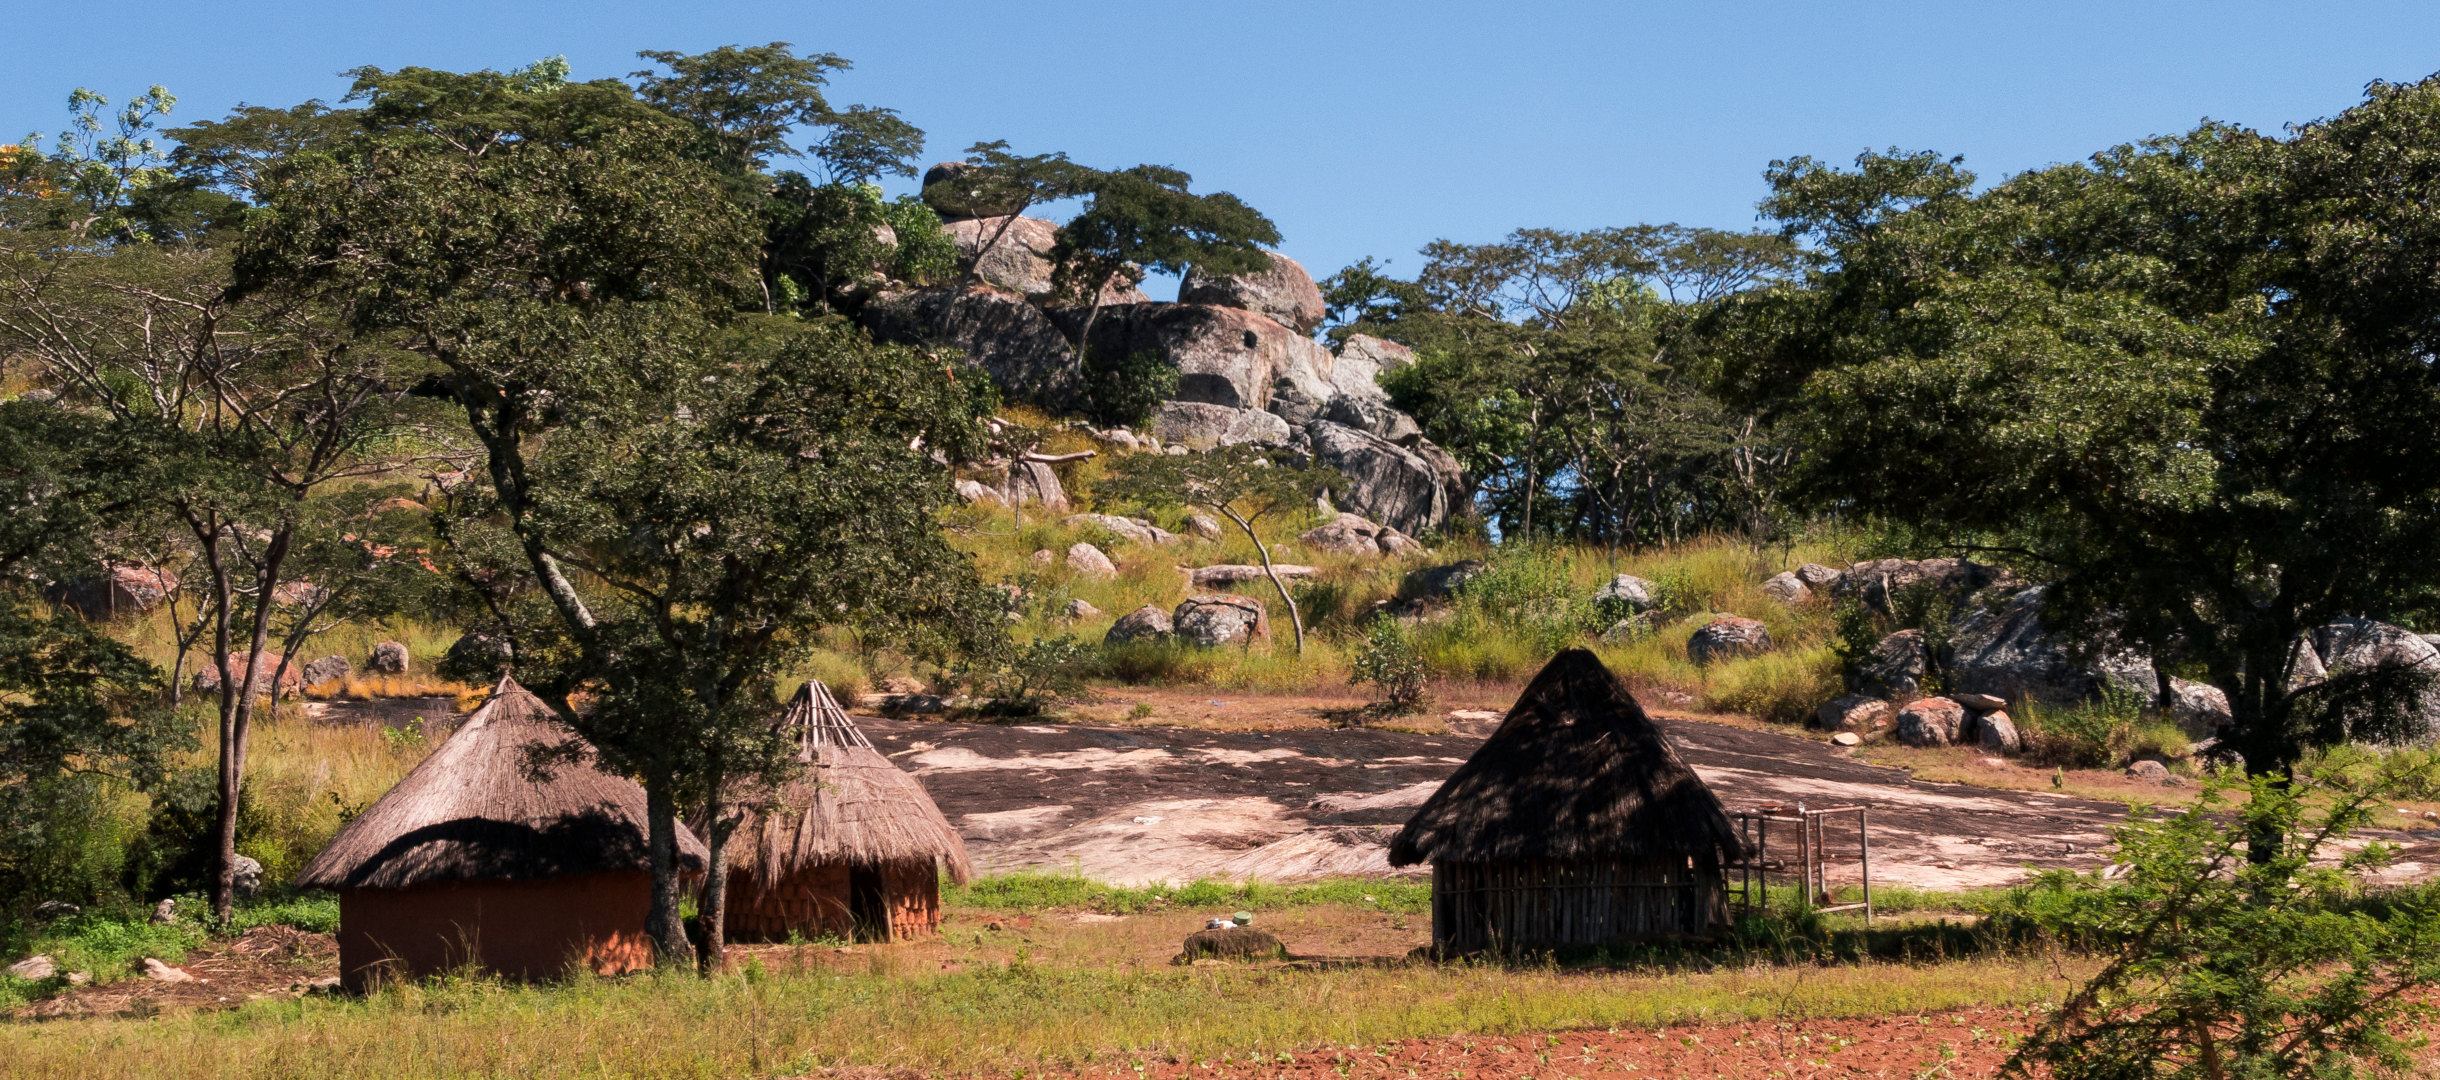 Runde Häuser in Simbabwe